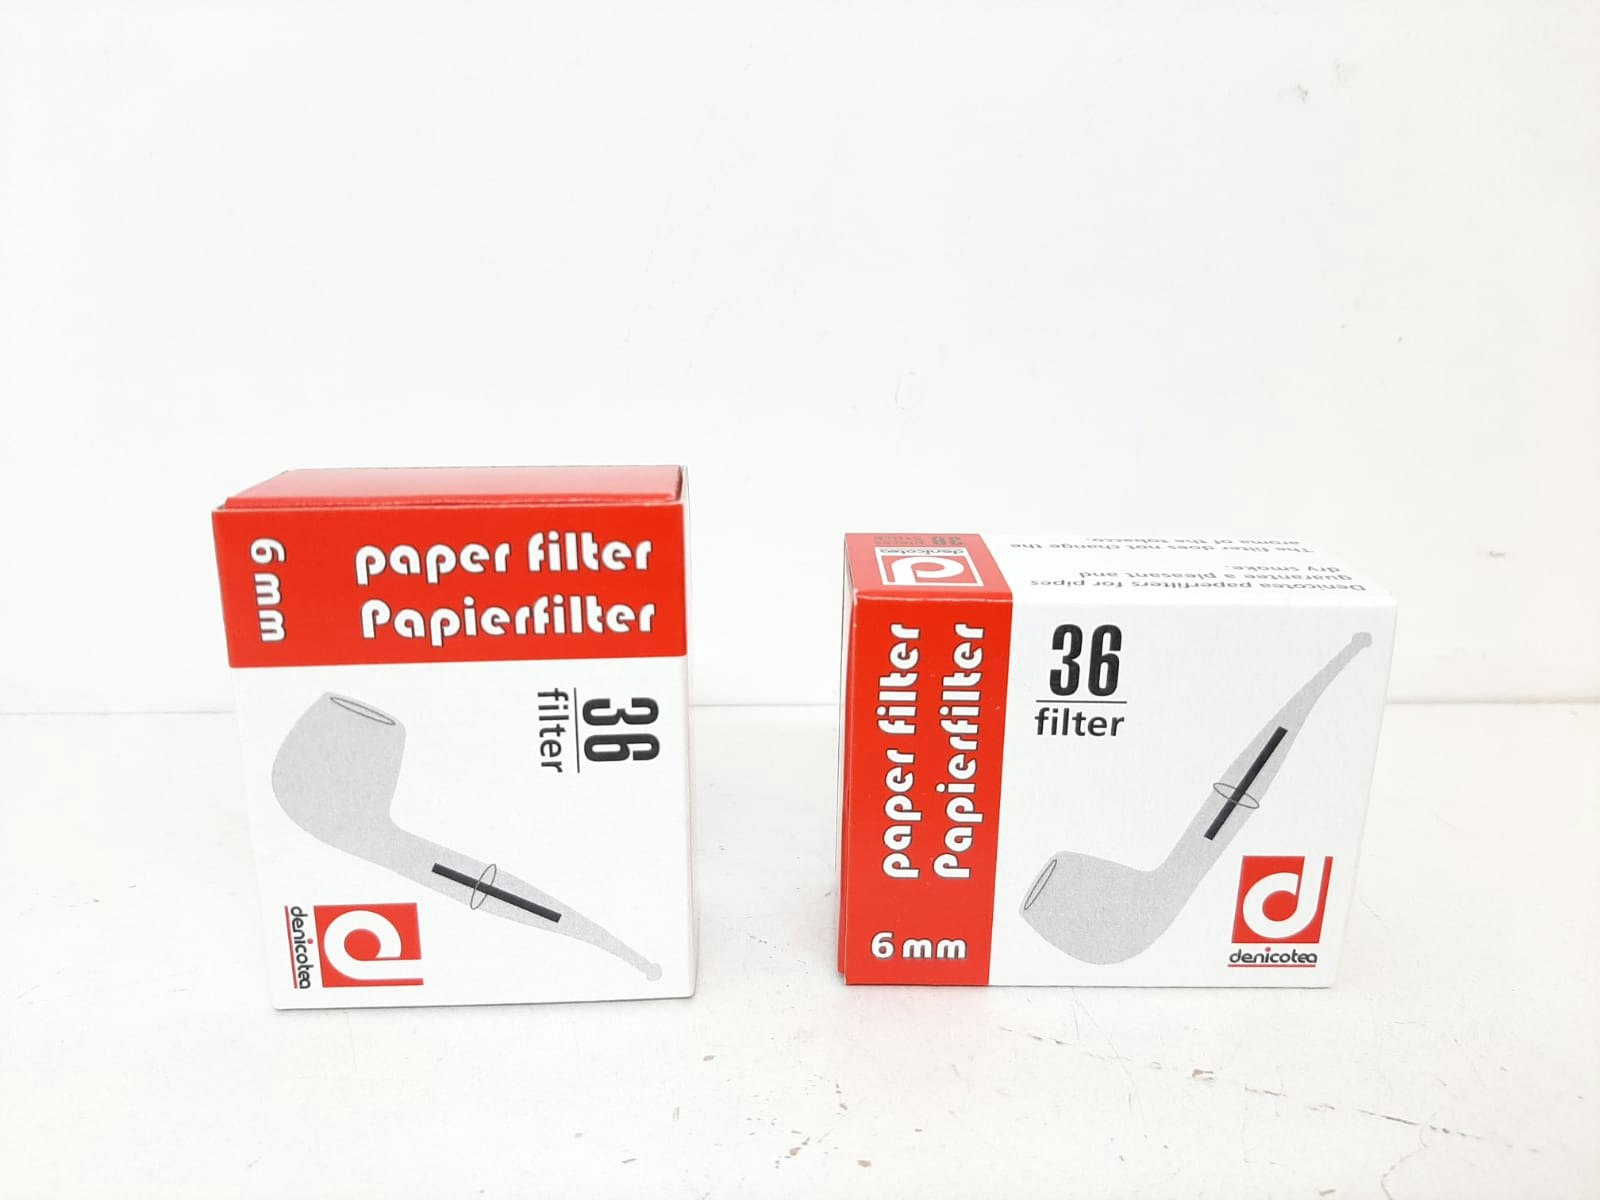 Denicotea Pappersfilter 6mm (1 förpackning X 36 filter)